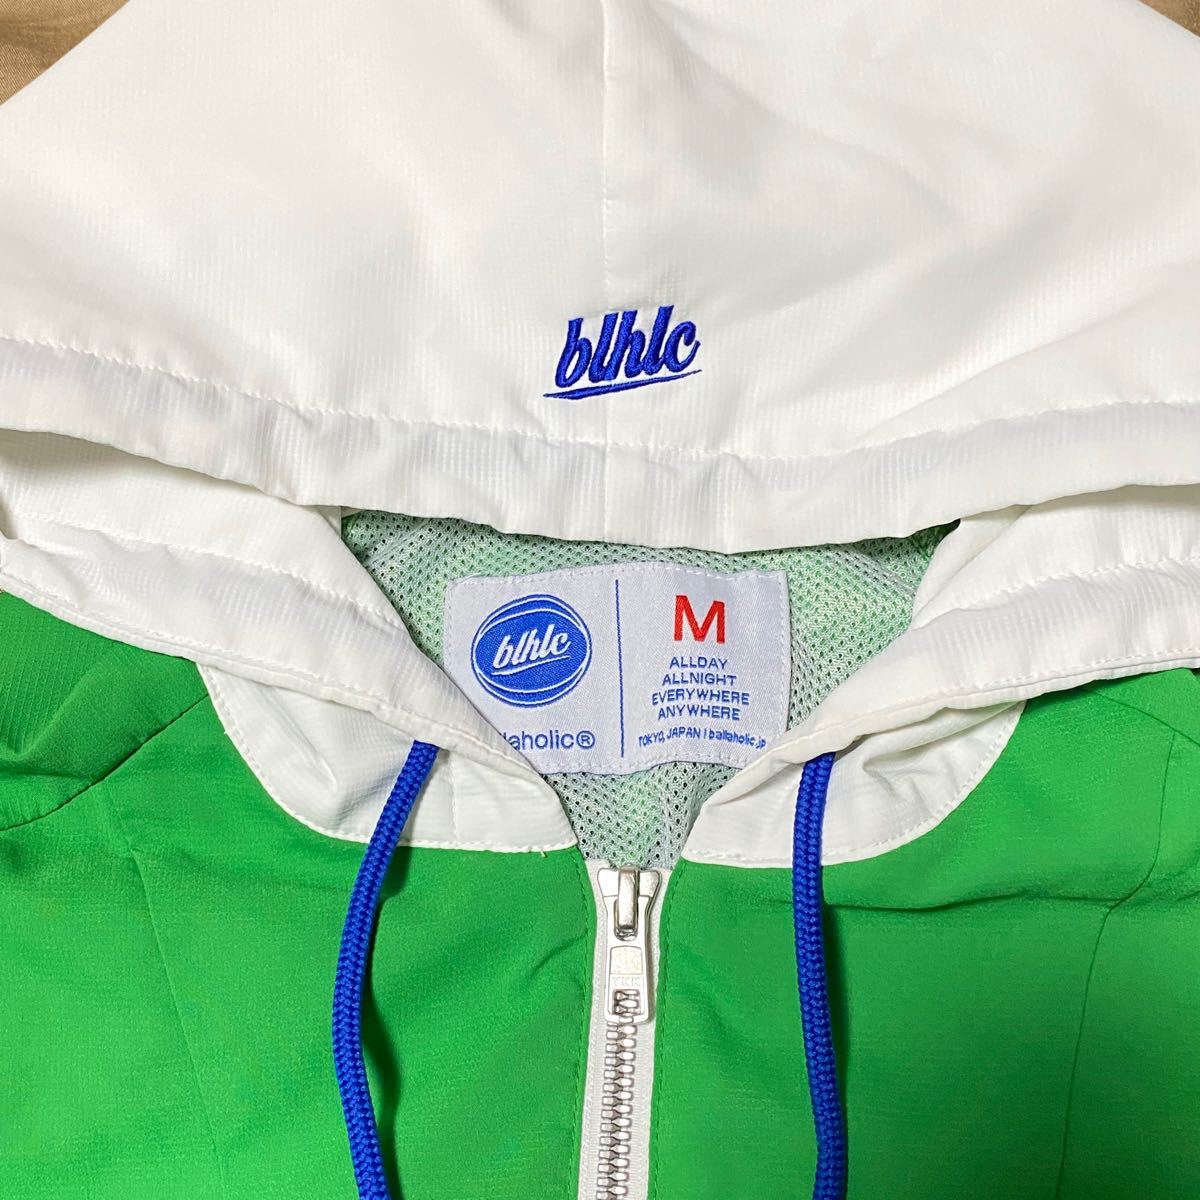 【希少品】ballaholic pullover jacket 緑×白 ナイロンジャケット Supreme